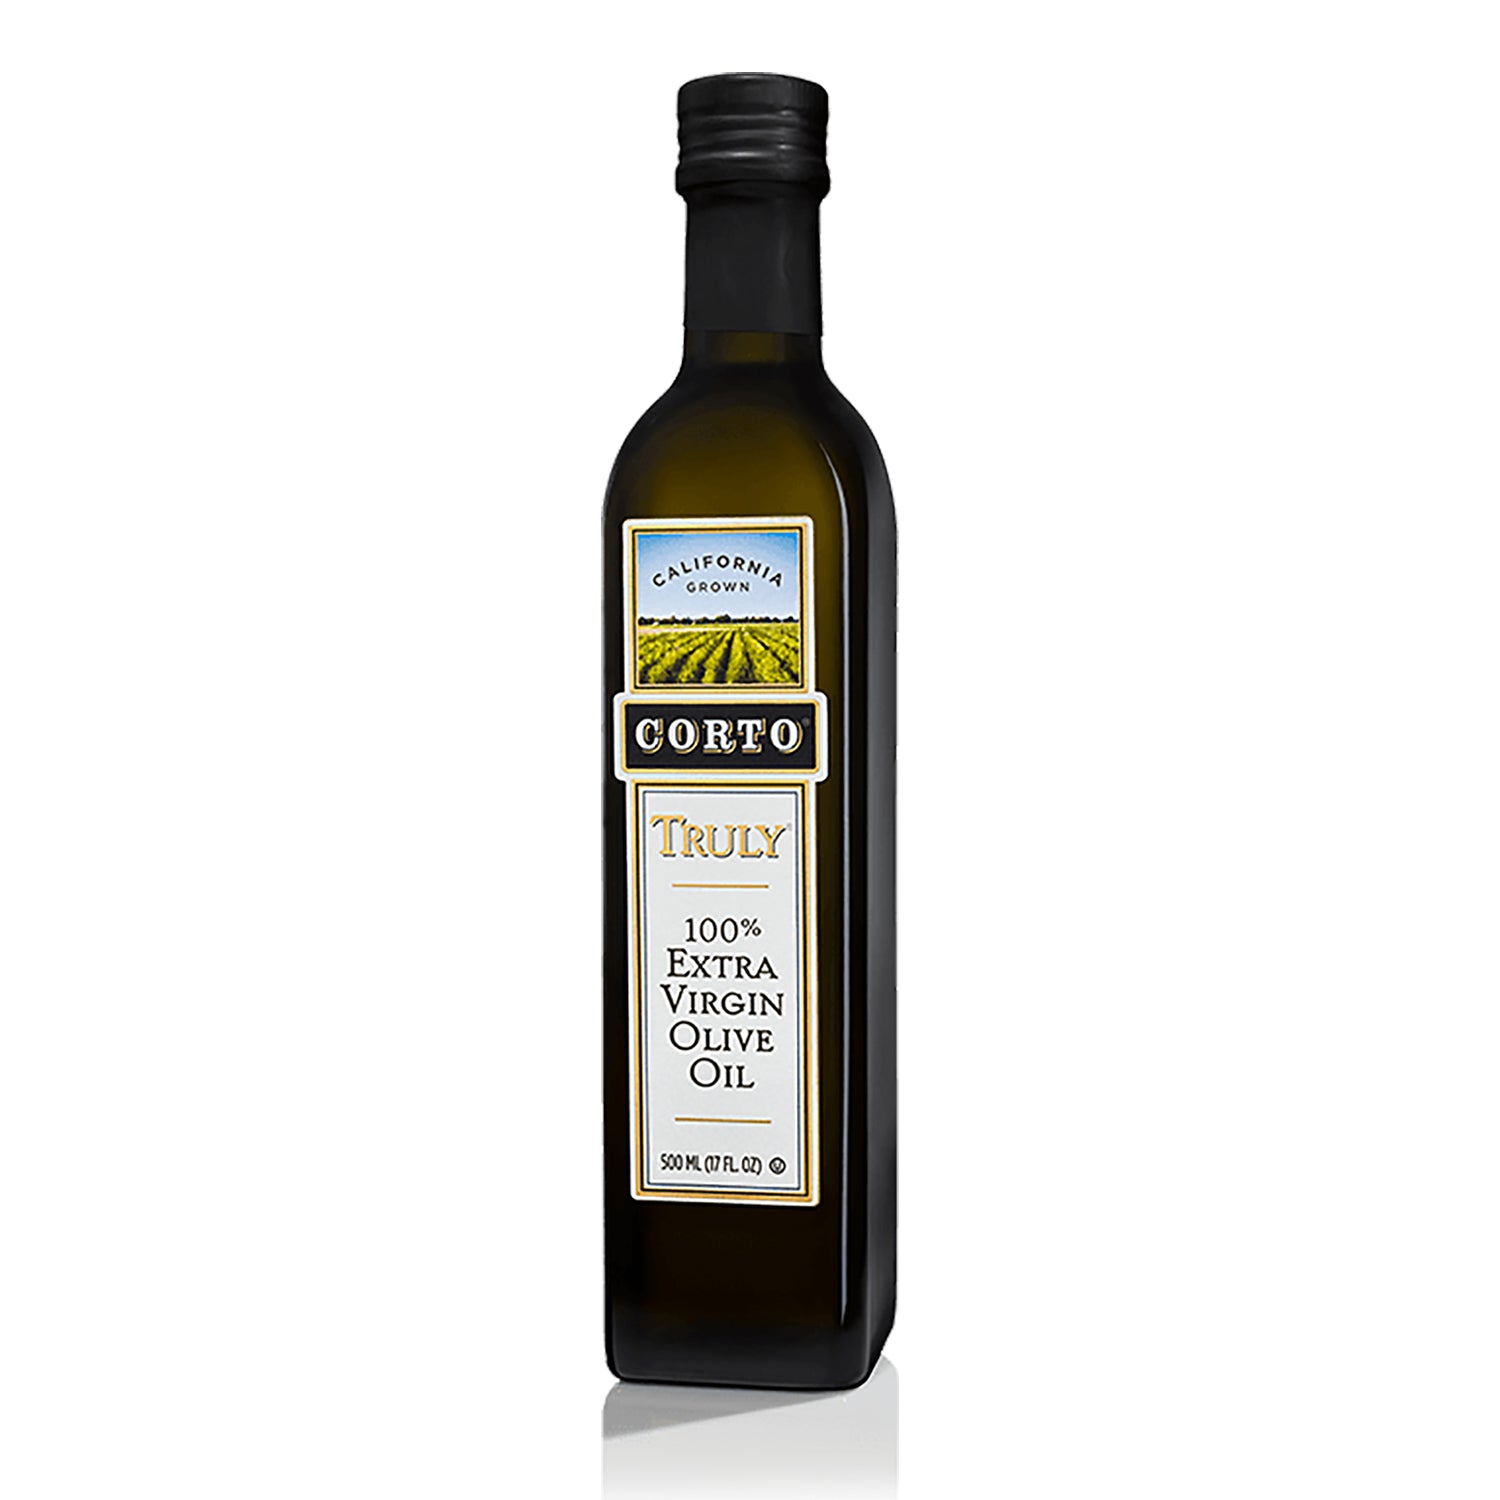 Corto 100% Estra Virgin Olive Oil